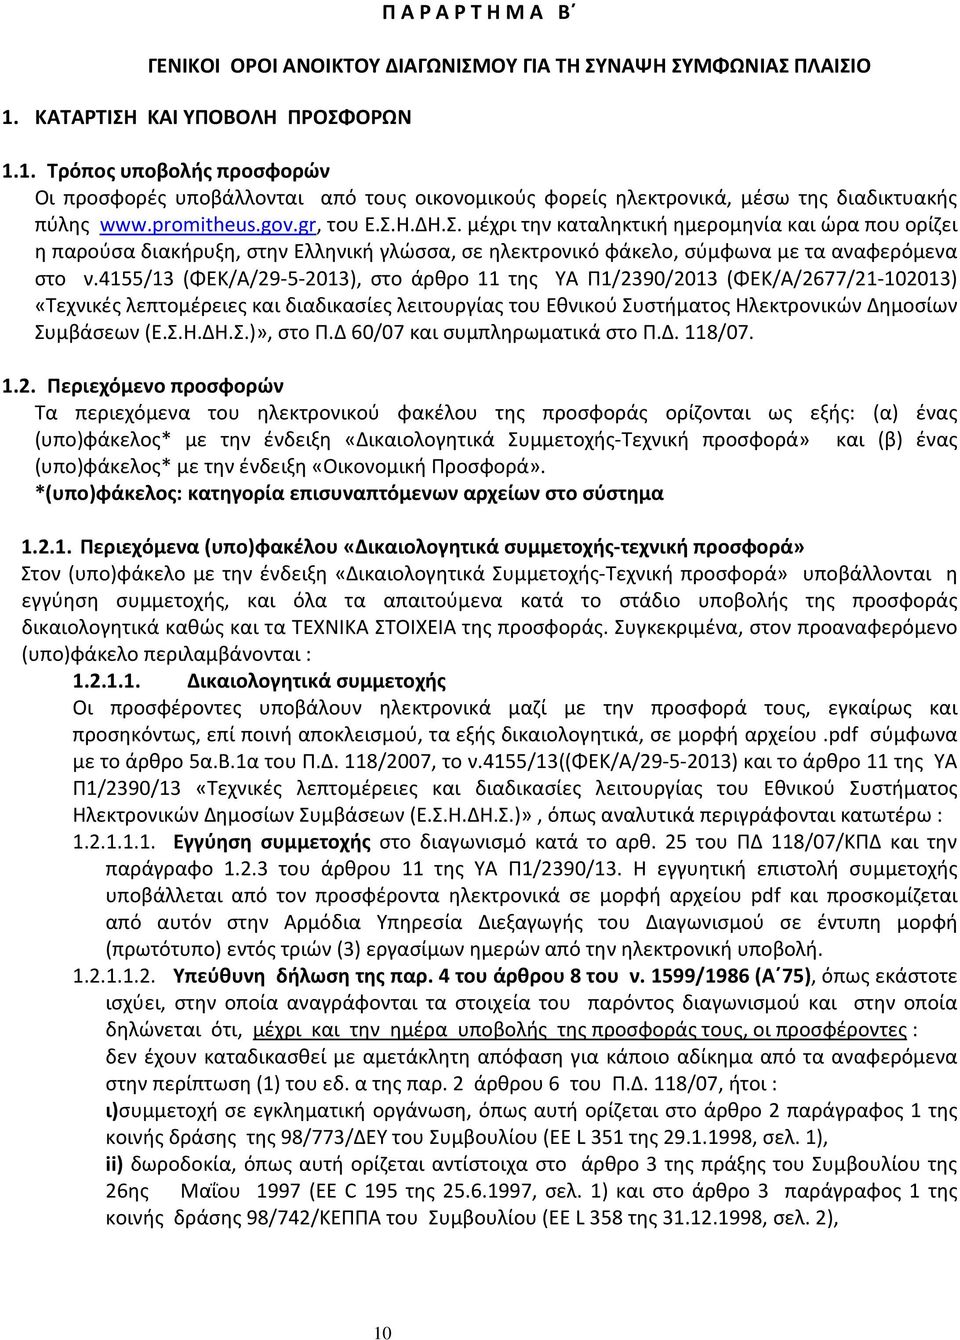 4155/13 (ΦΕΚ/Α/29-5-2013), στο άρθρο 11 της ΥΑ Π1/2390/2013 (ΦΕΚ/Α/2677/21-102013) «Τεχνικές λεπτομέρειες και διαδικασίες λειτουργίας του Εθνικού Συστήματος Ηλεκτρονικών Δημοσίων Συμβάσεων (Ε.Σ.Η.ΔΗ.